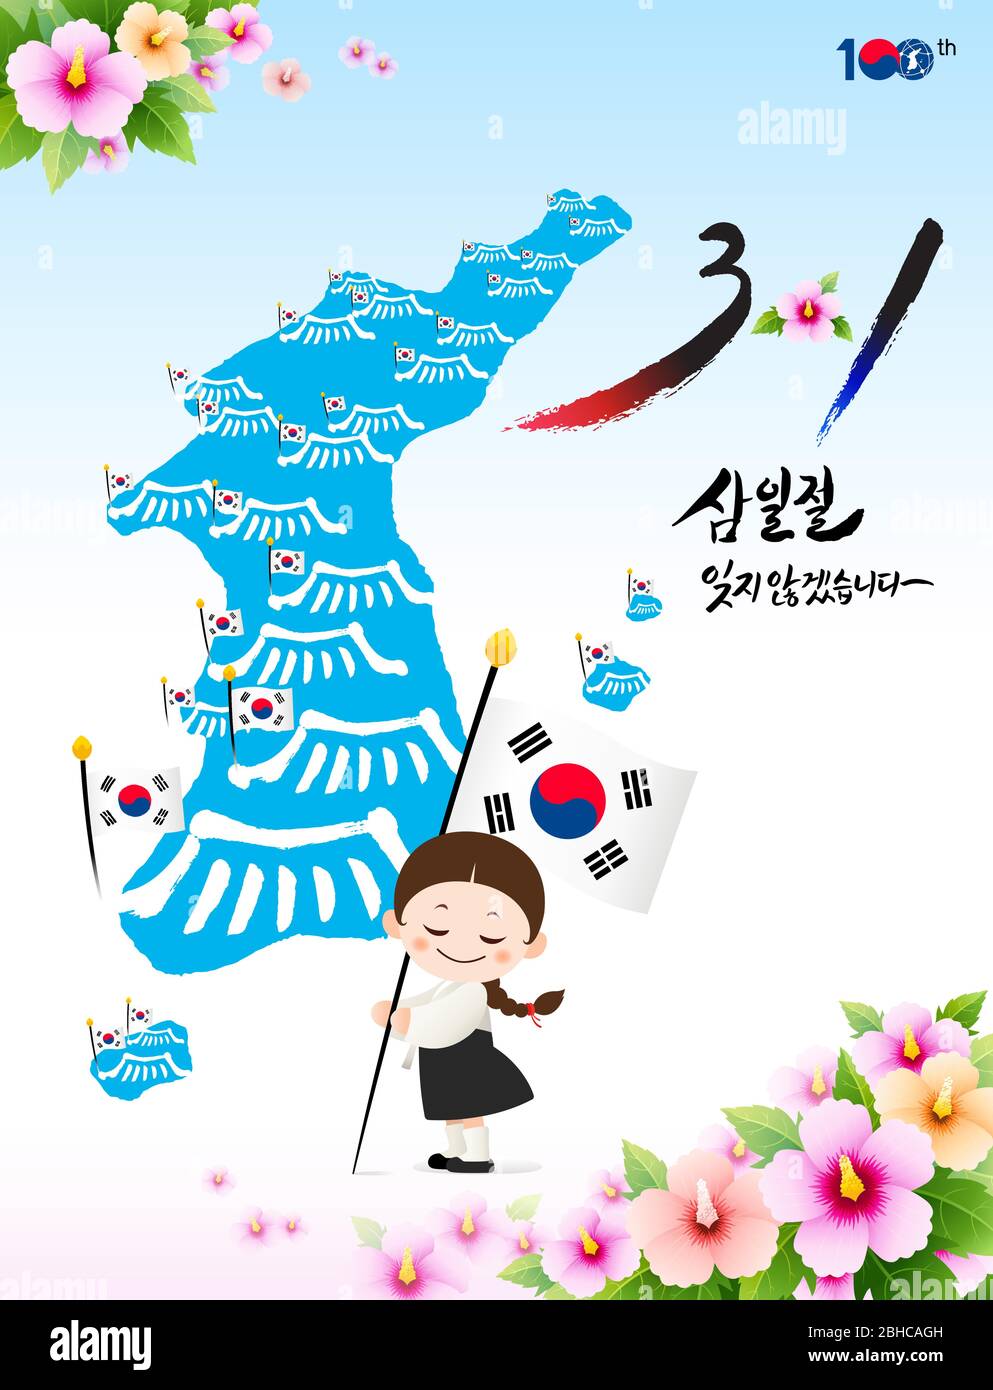 Independence Movement Day, traduzione coreana. Un bambino in hanbok sta tenendo la bandiera nazionale davanti ad una mappa coreana. Vettore. Illustrazione Vettoriale